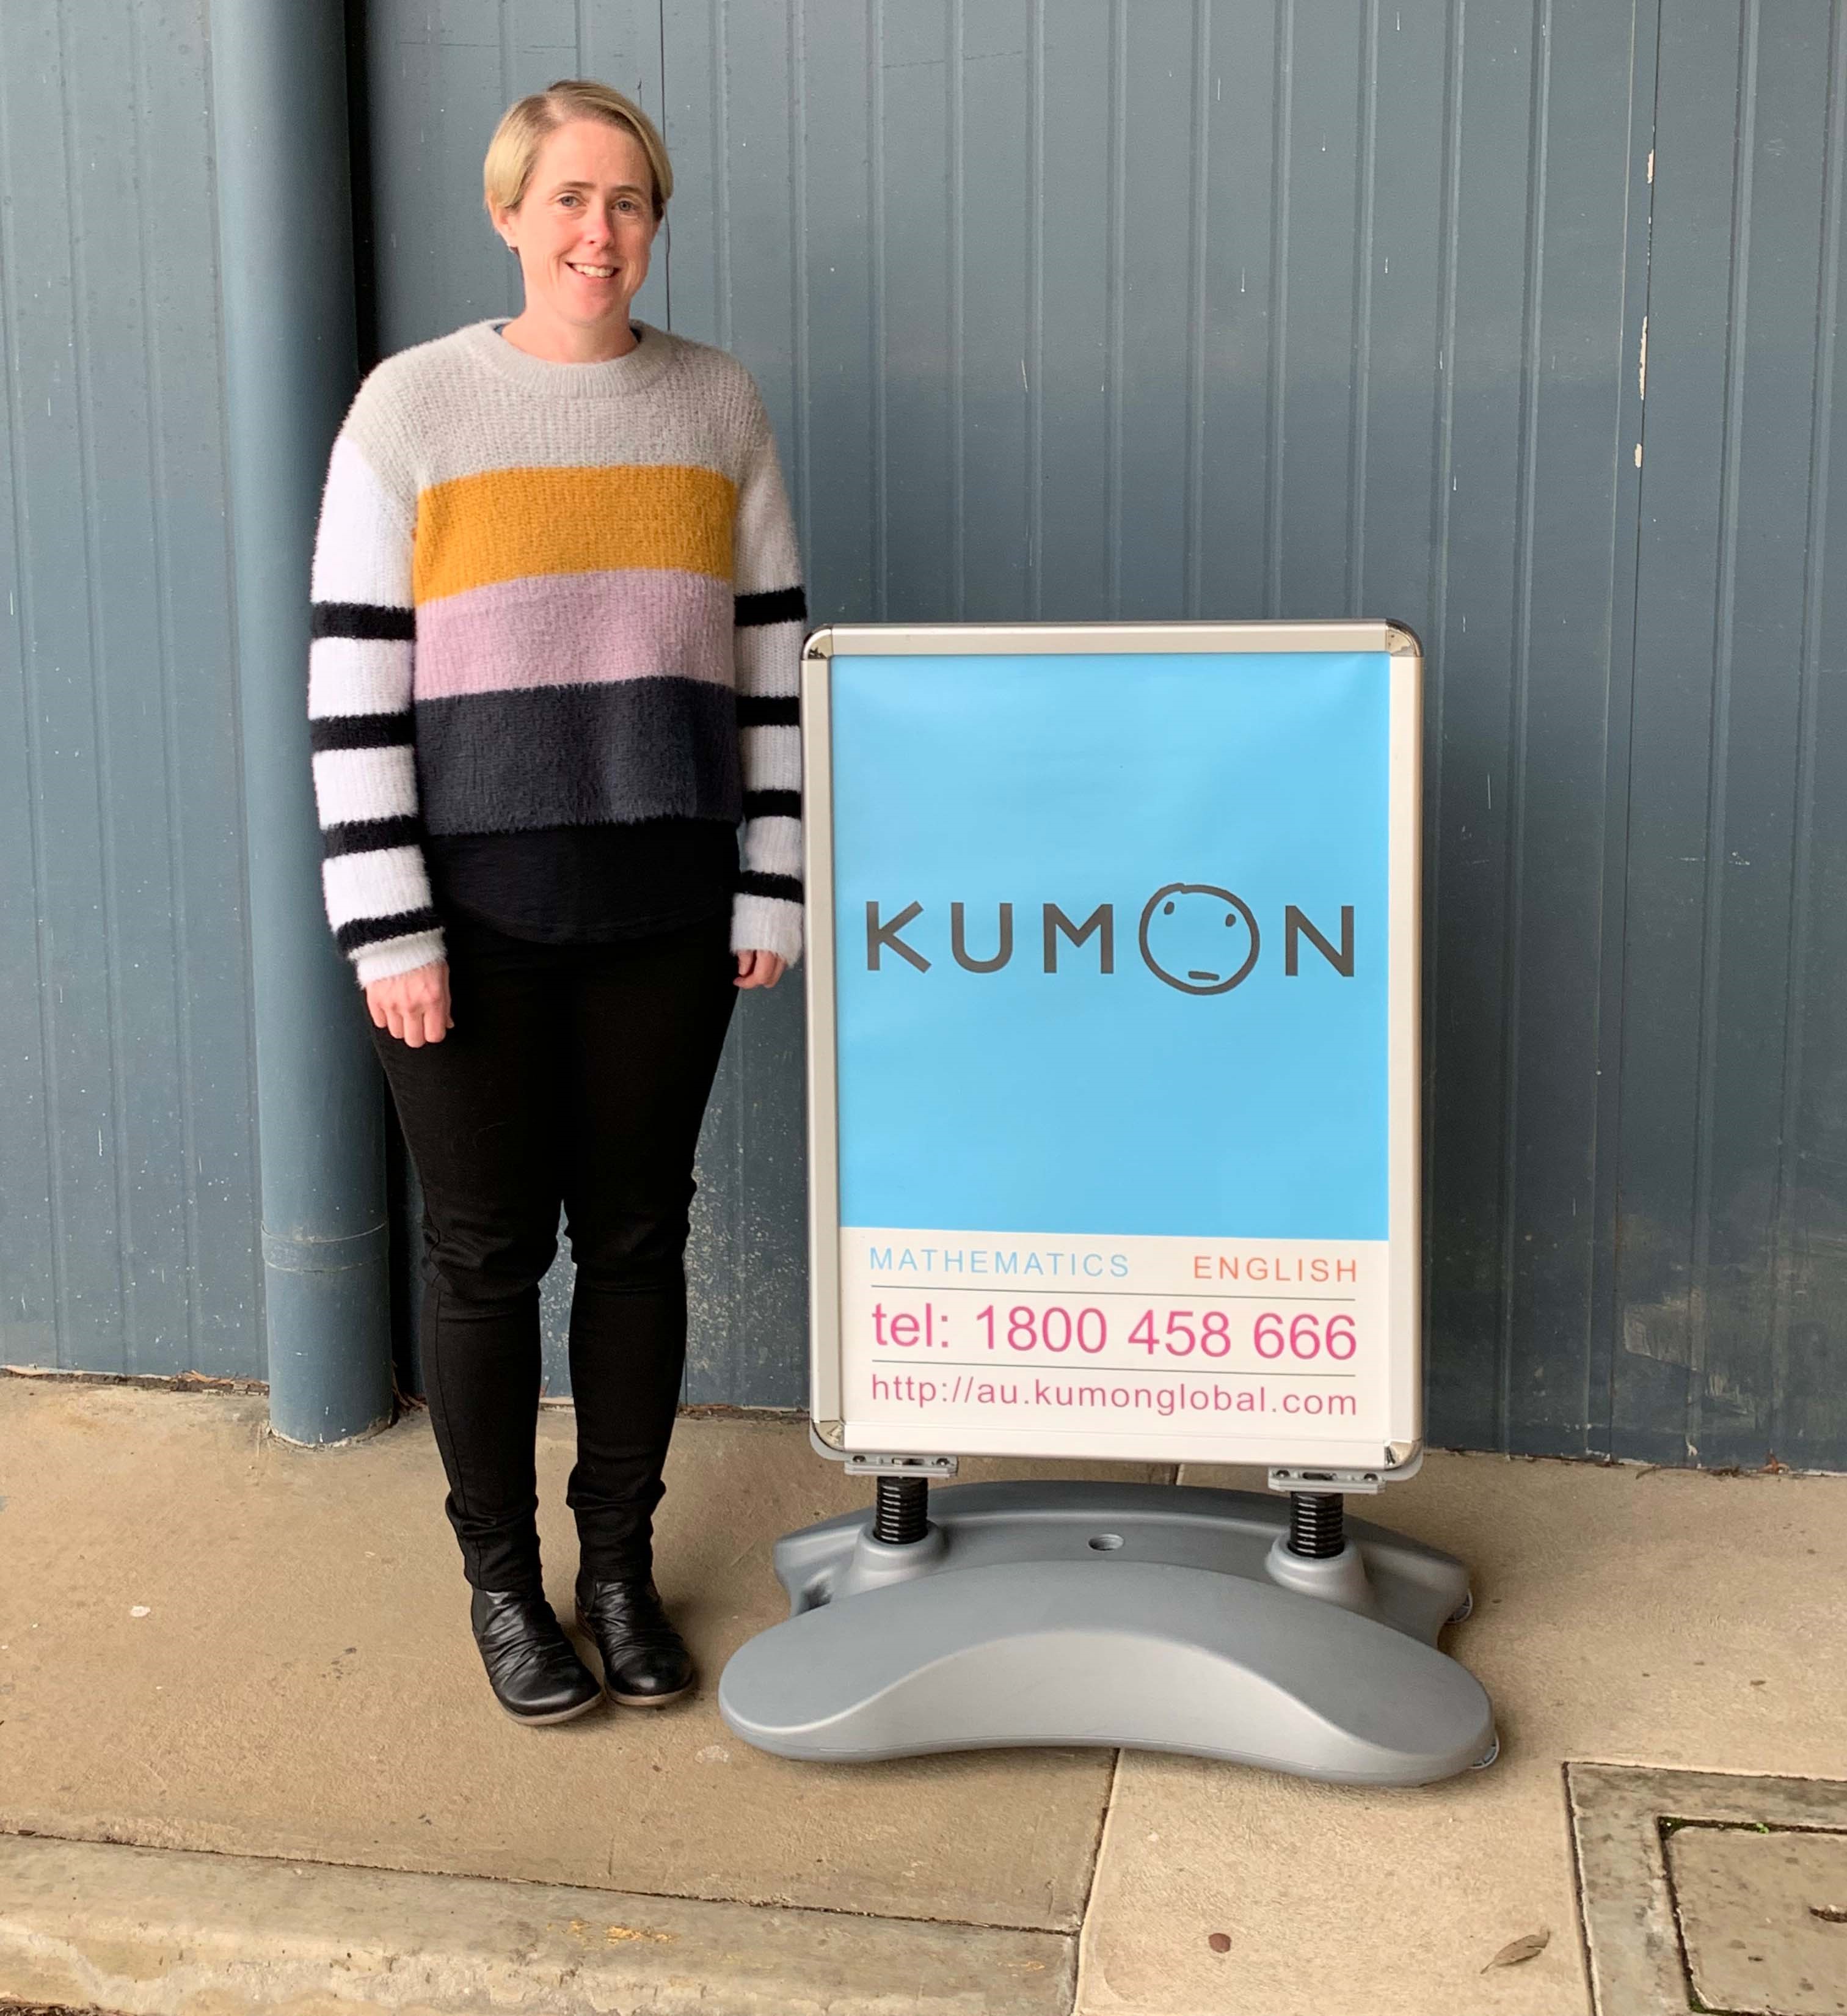 Open a Kumon franchise in regional Australia or New Zealand